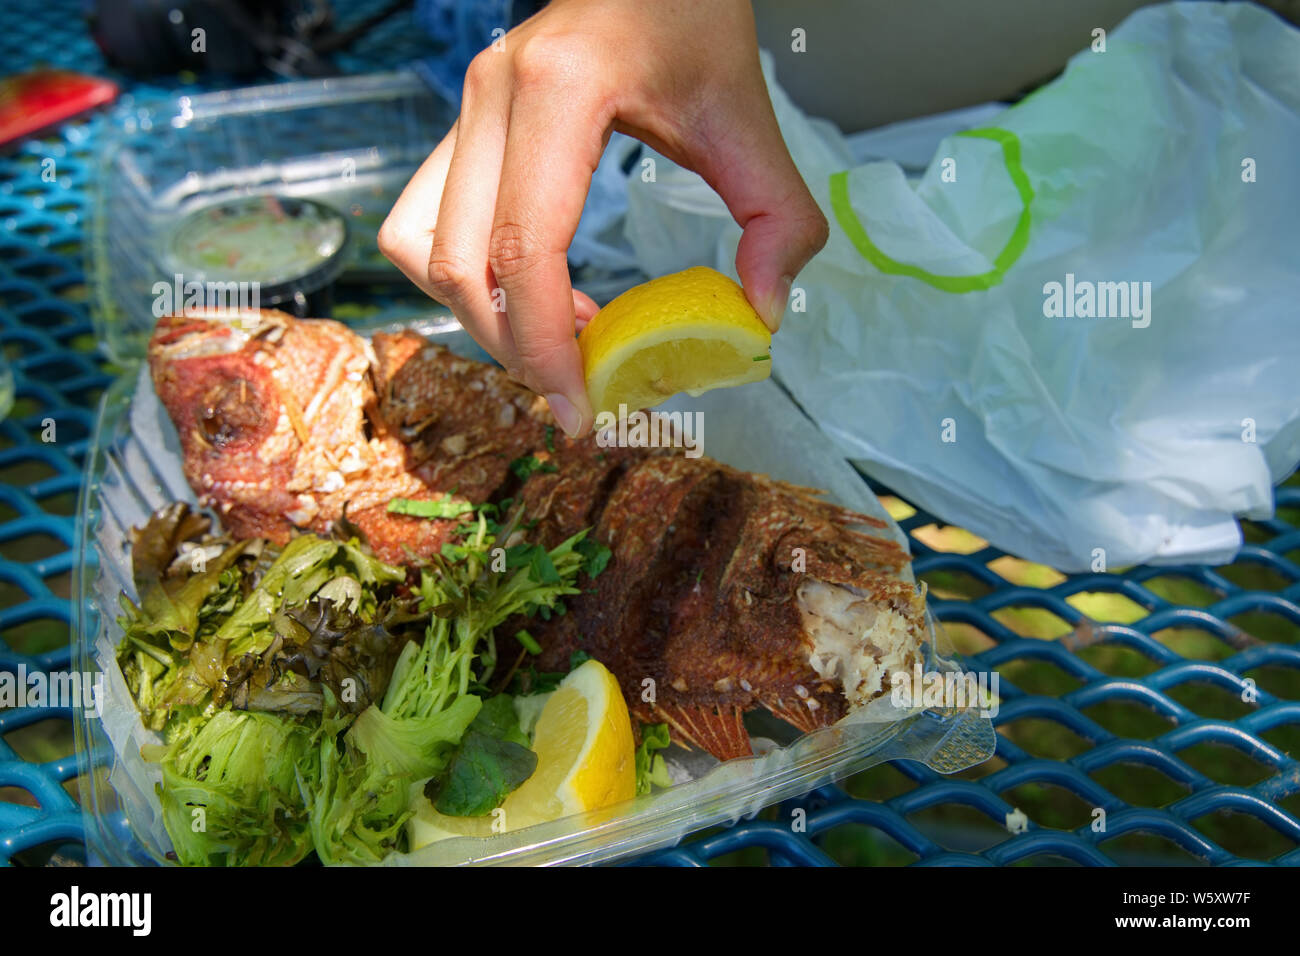 Spremitura a mano un taglio fresco limone su una succosa estrarre fried red snapper. Foto Stock